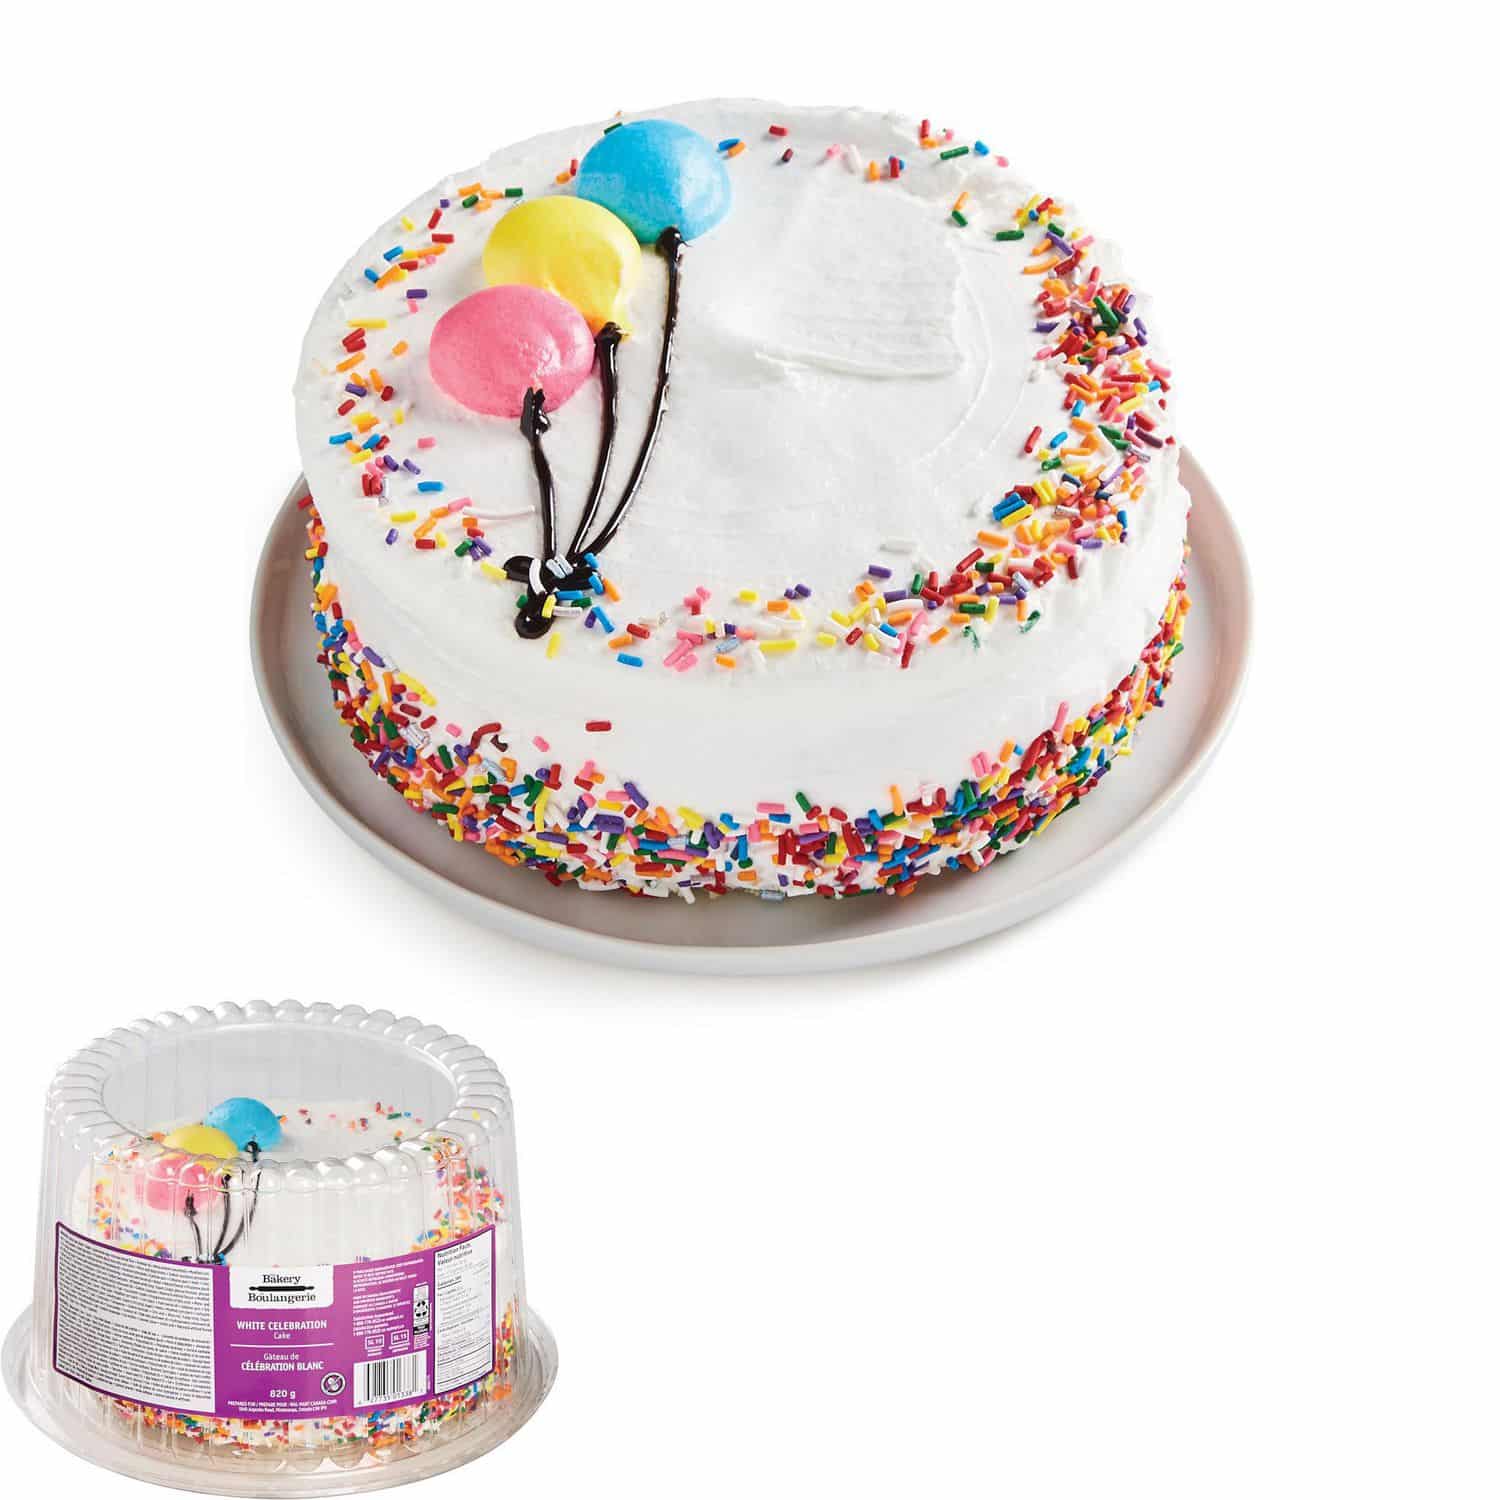 The Bakery White Celebration Cake